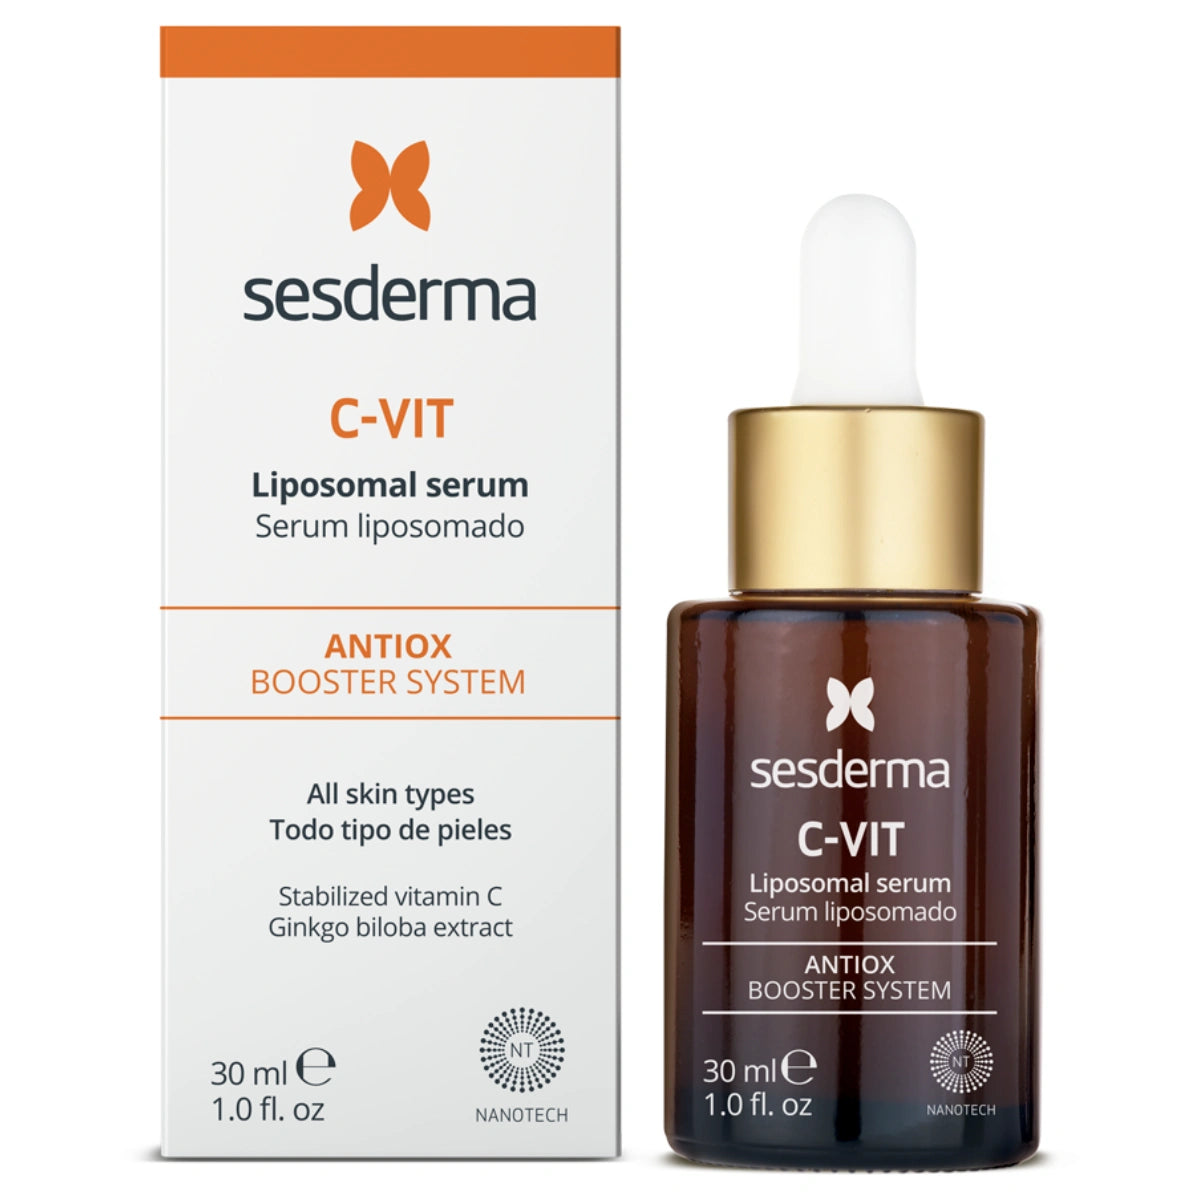 SESDERMA C-Vit AX+ Liposomal Serum 30 ml liposomiseerumi hyperpigmentaation hoitoon